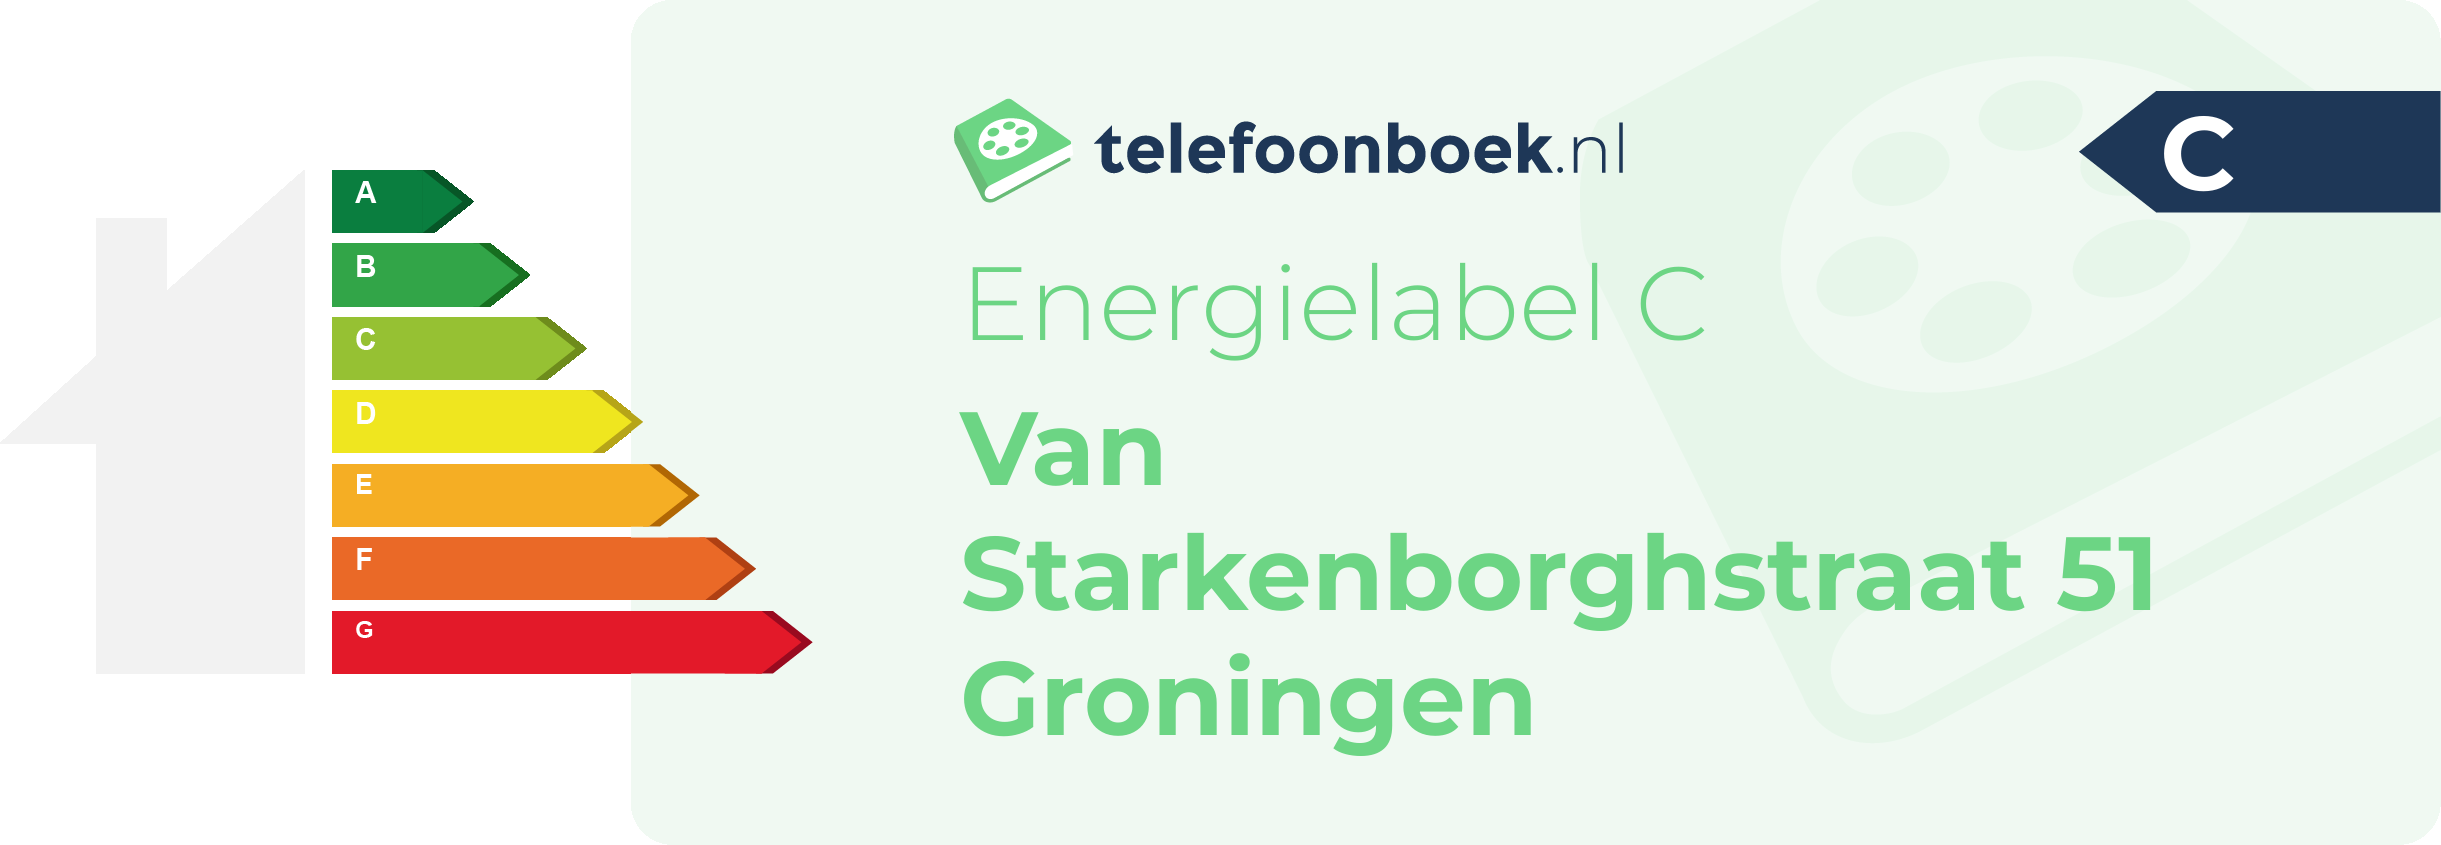 Energielabel Van Starkenborghstraat 51 Groningen